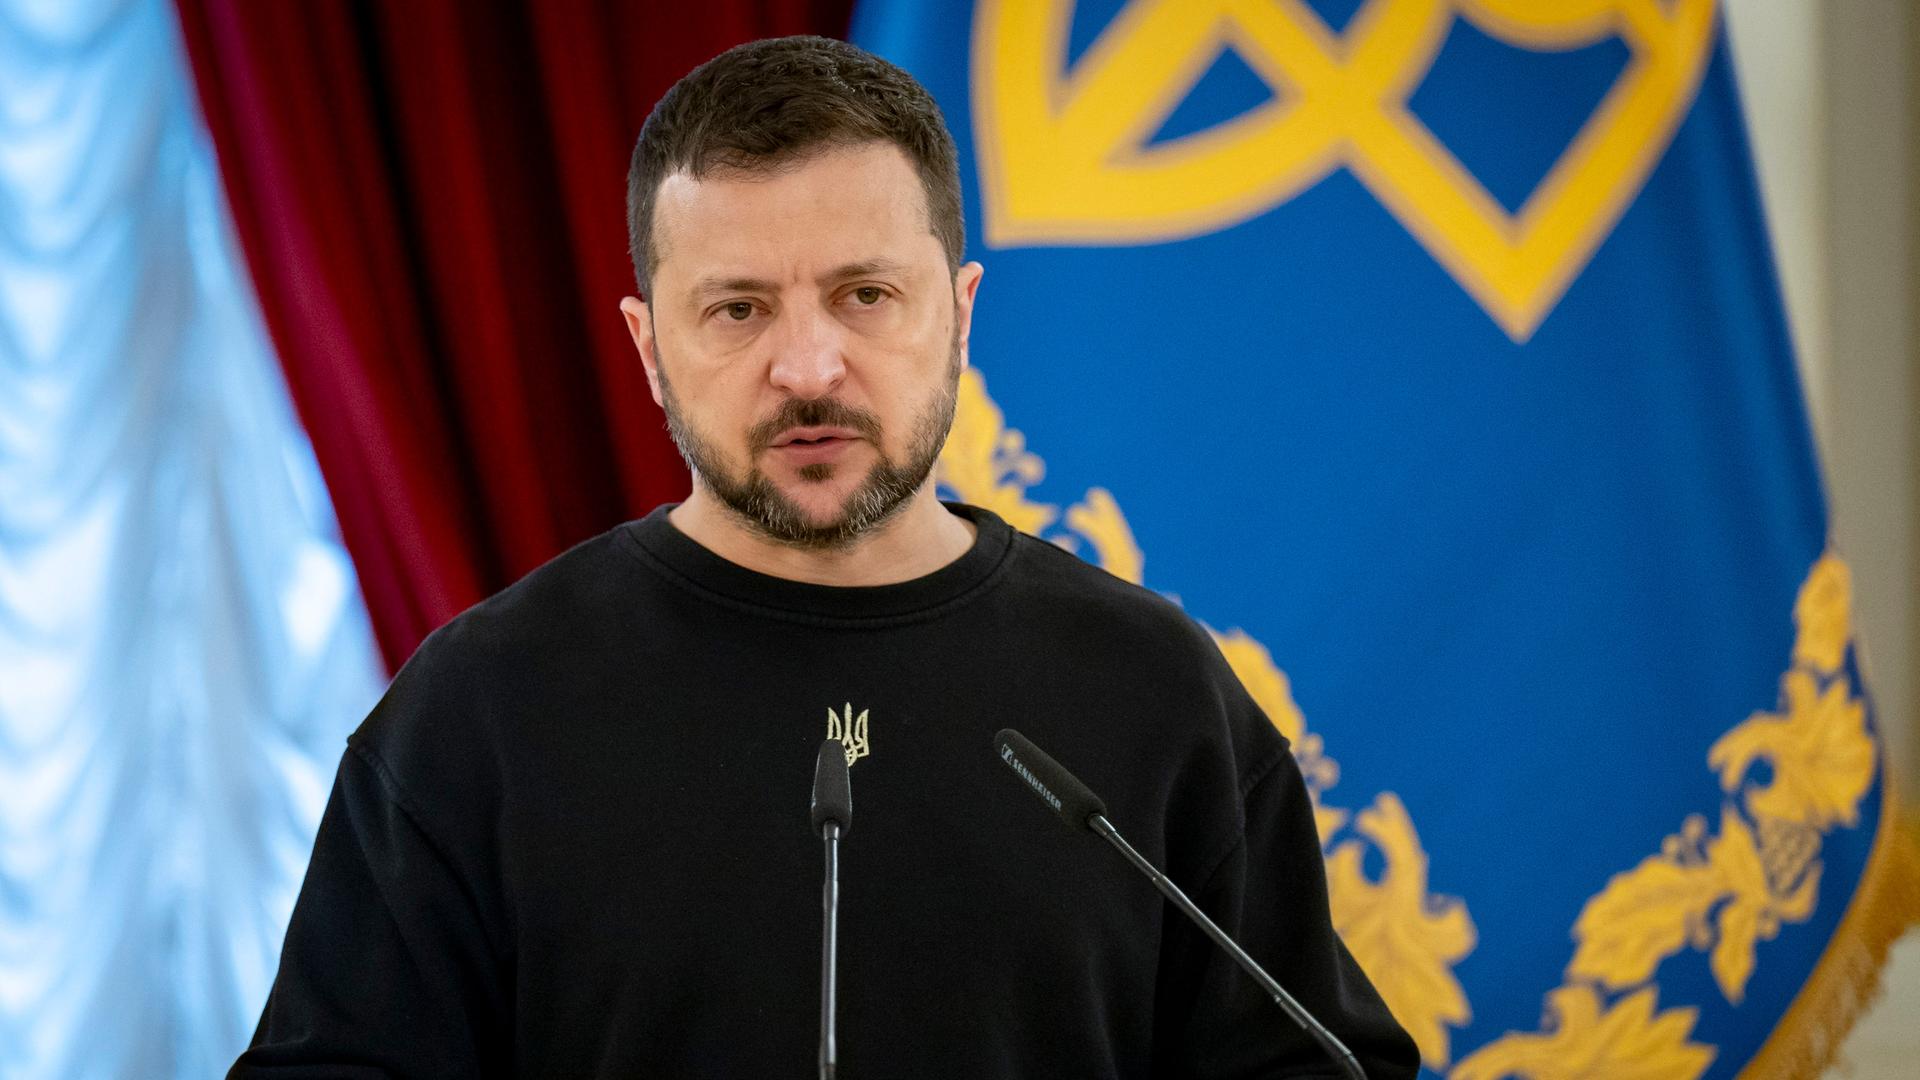 Wolodymyr Selenskyj auf einer Pressekonferenz, im Hintergrund sind verschiedene Flaggen zu sehen.